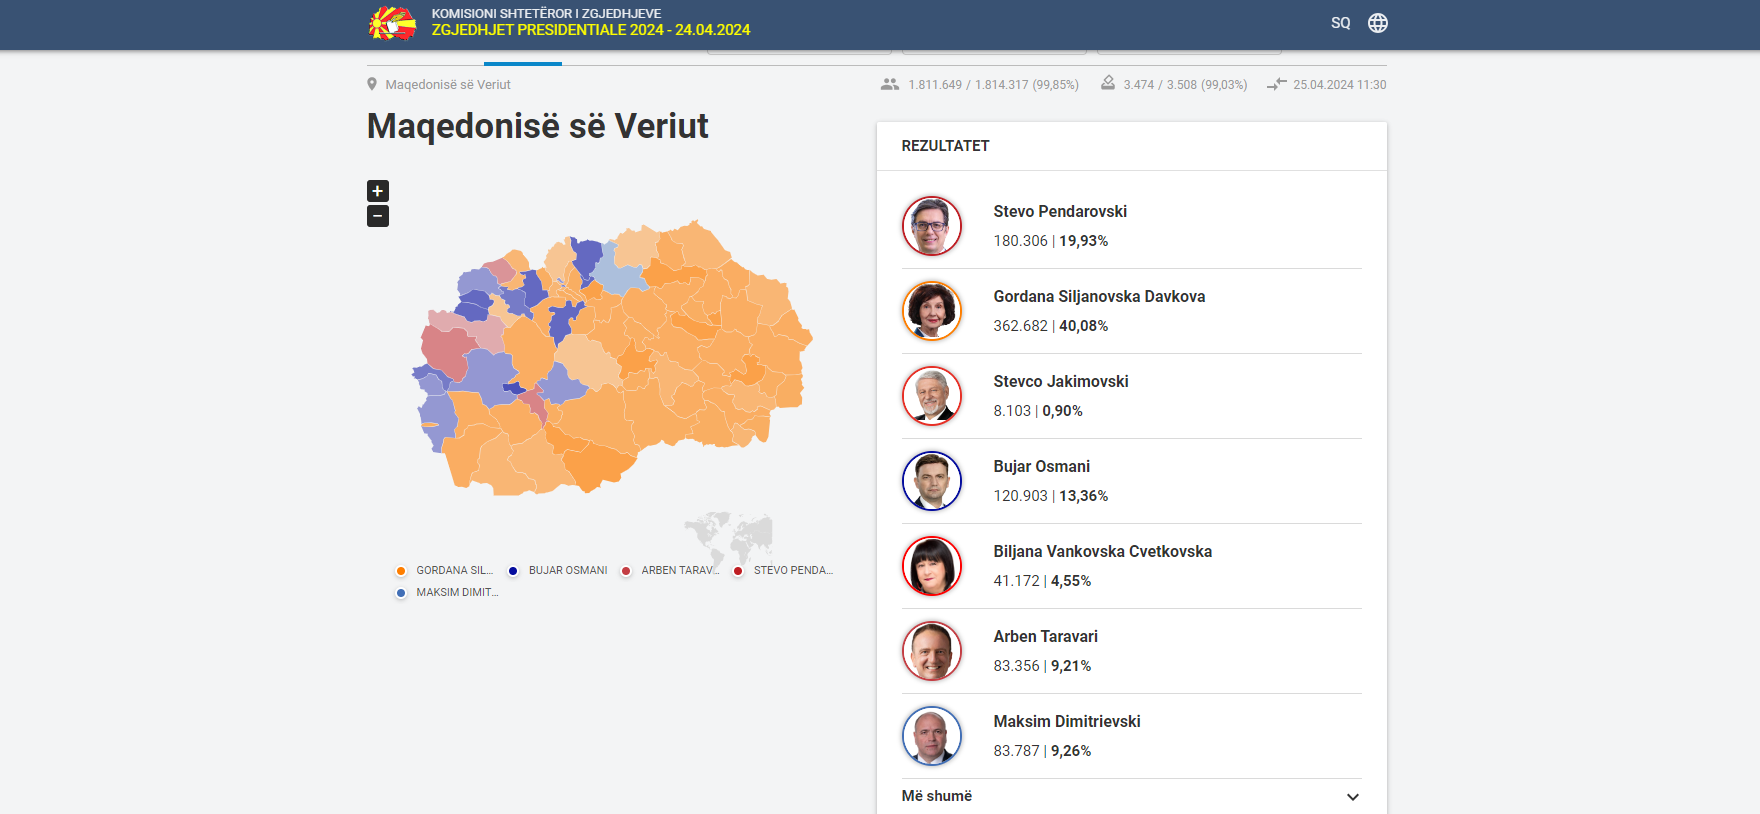 Siljanovska dhe Pendarovski do të përballen në rrethin e dytë të zgjedhjeve presidenciale